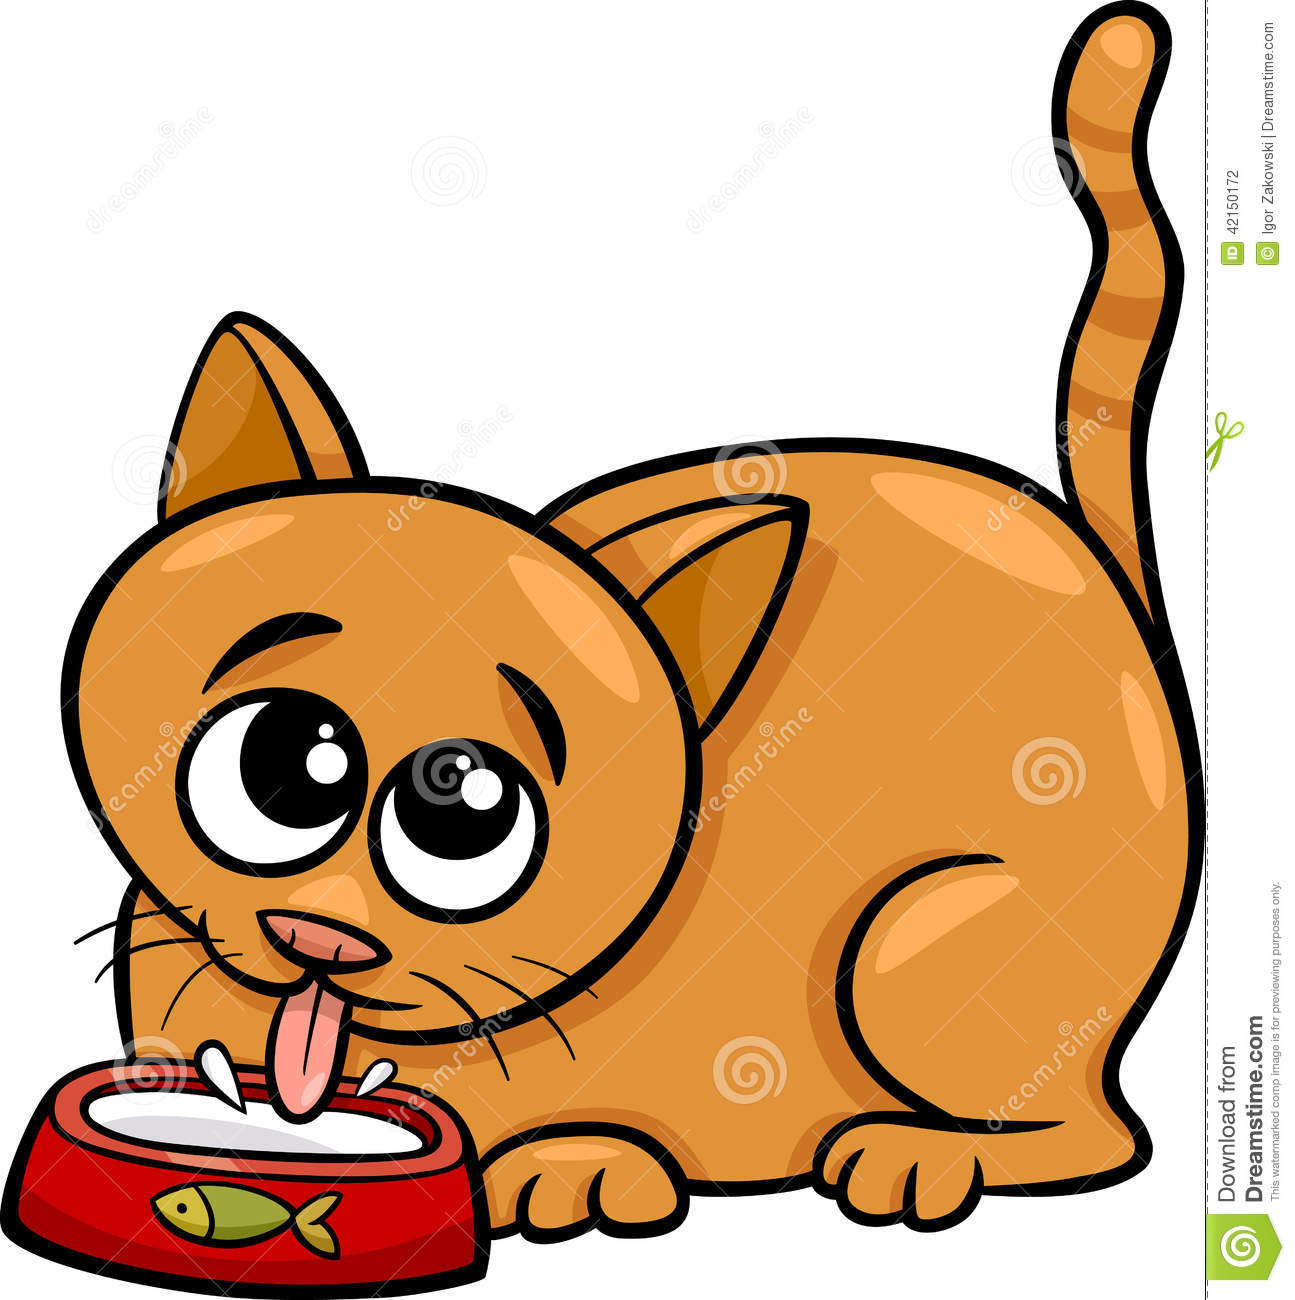 Cat Drinking Milk Cartoon Illustration Stock Vector   Image  42150172